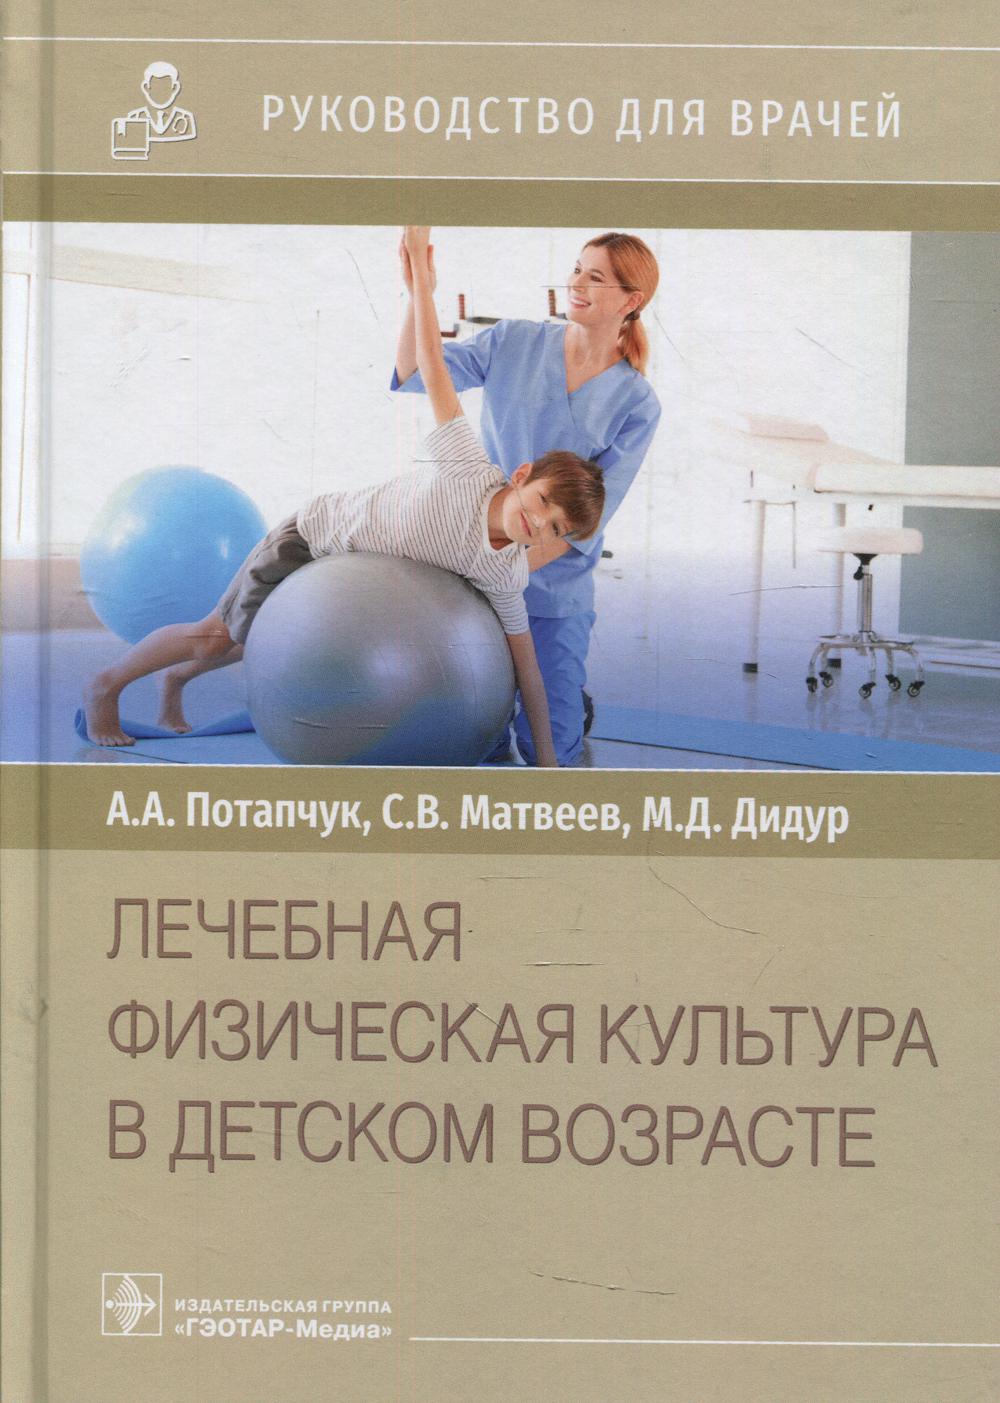 фото Книга лечебная физическая культура в детском возрасте гэотар-медиа